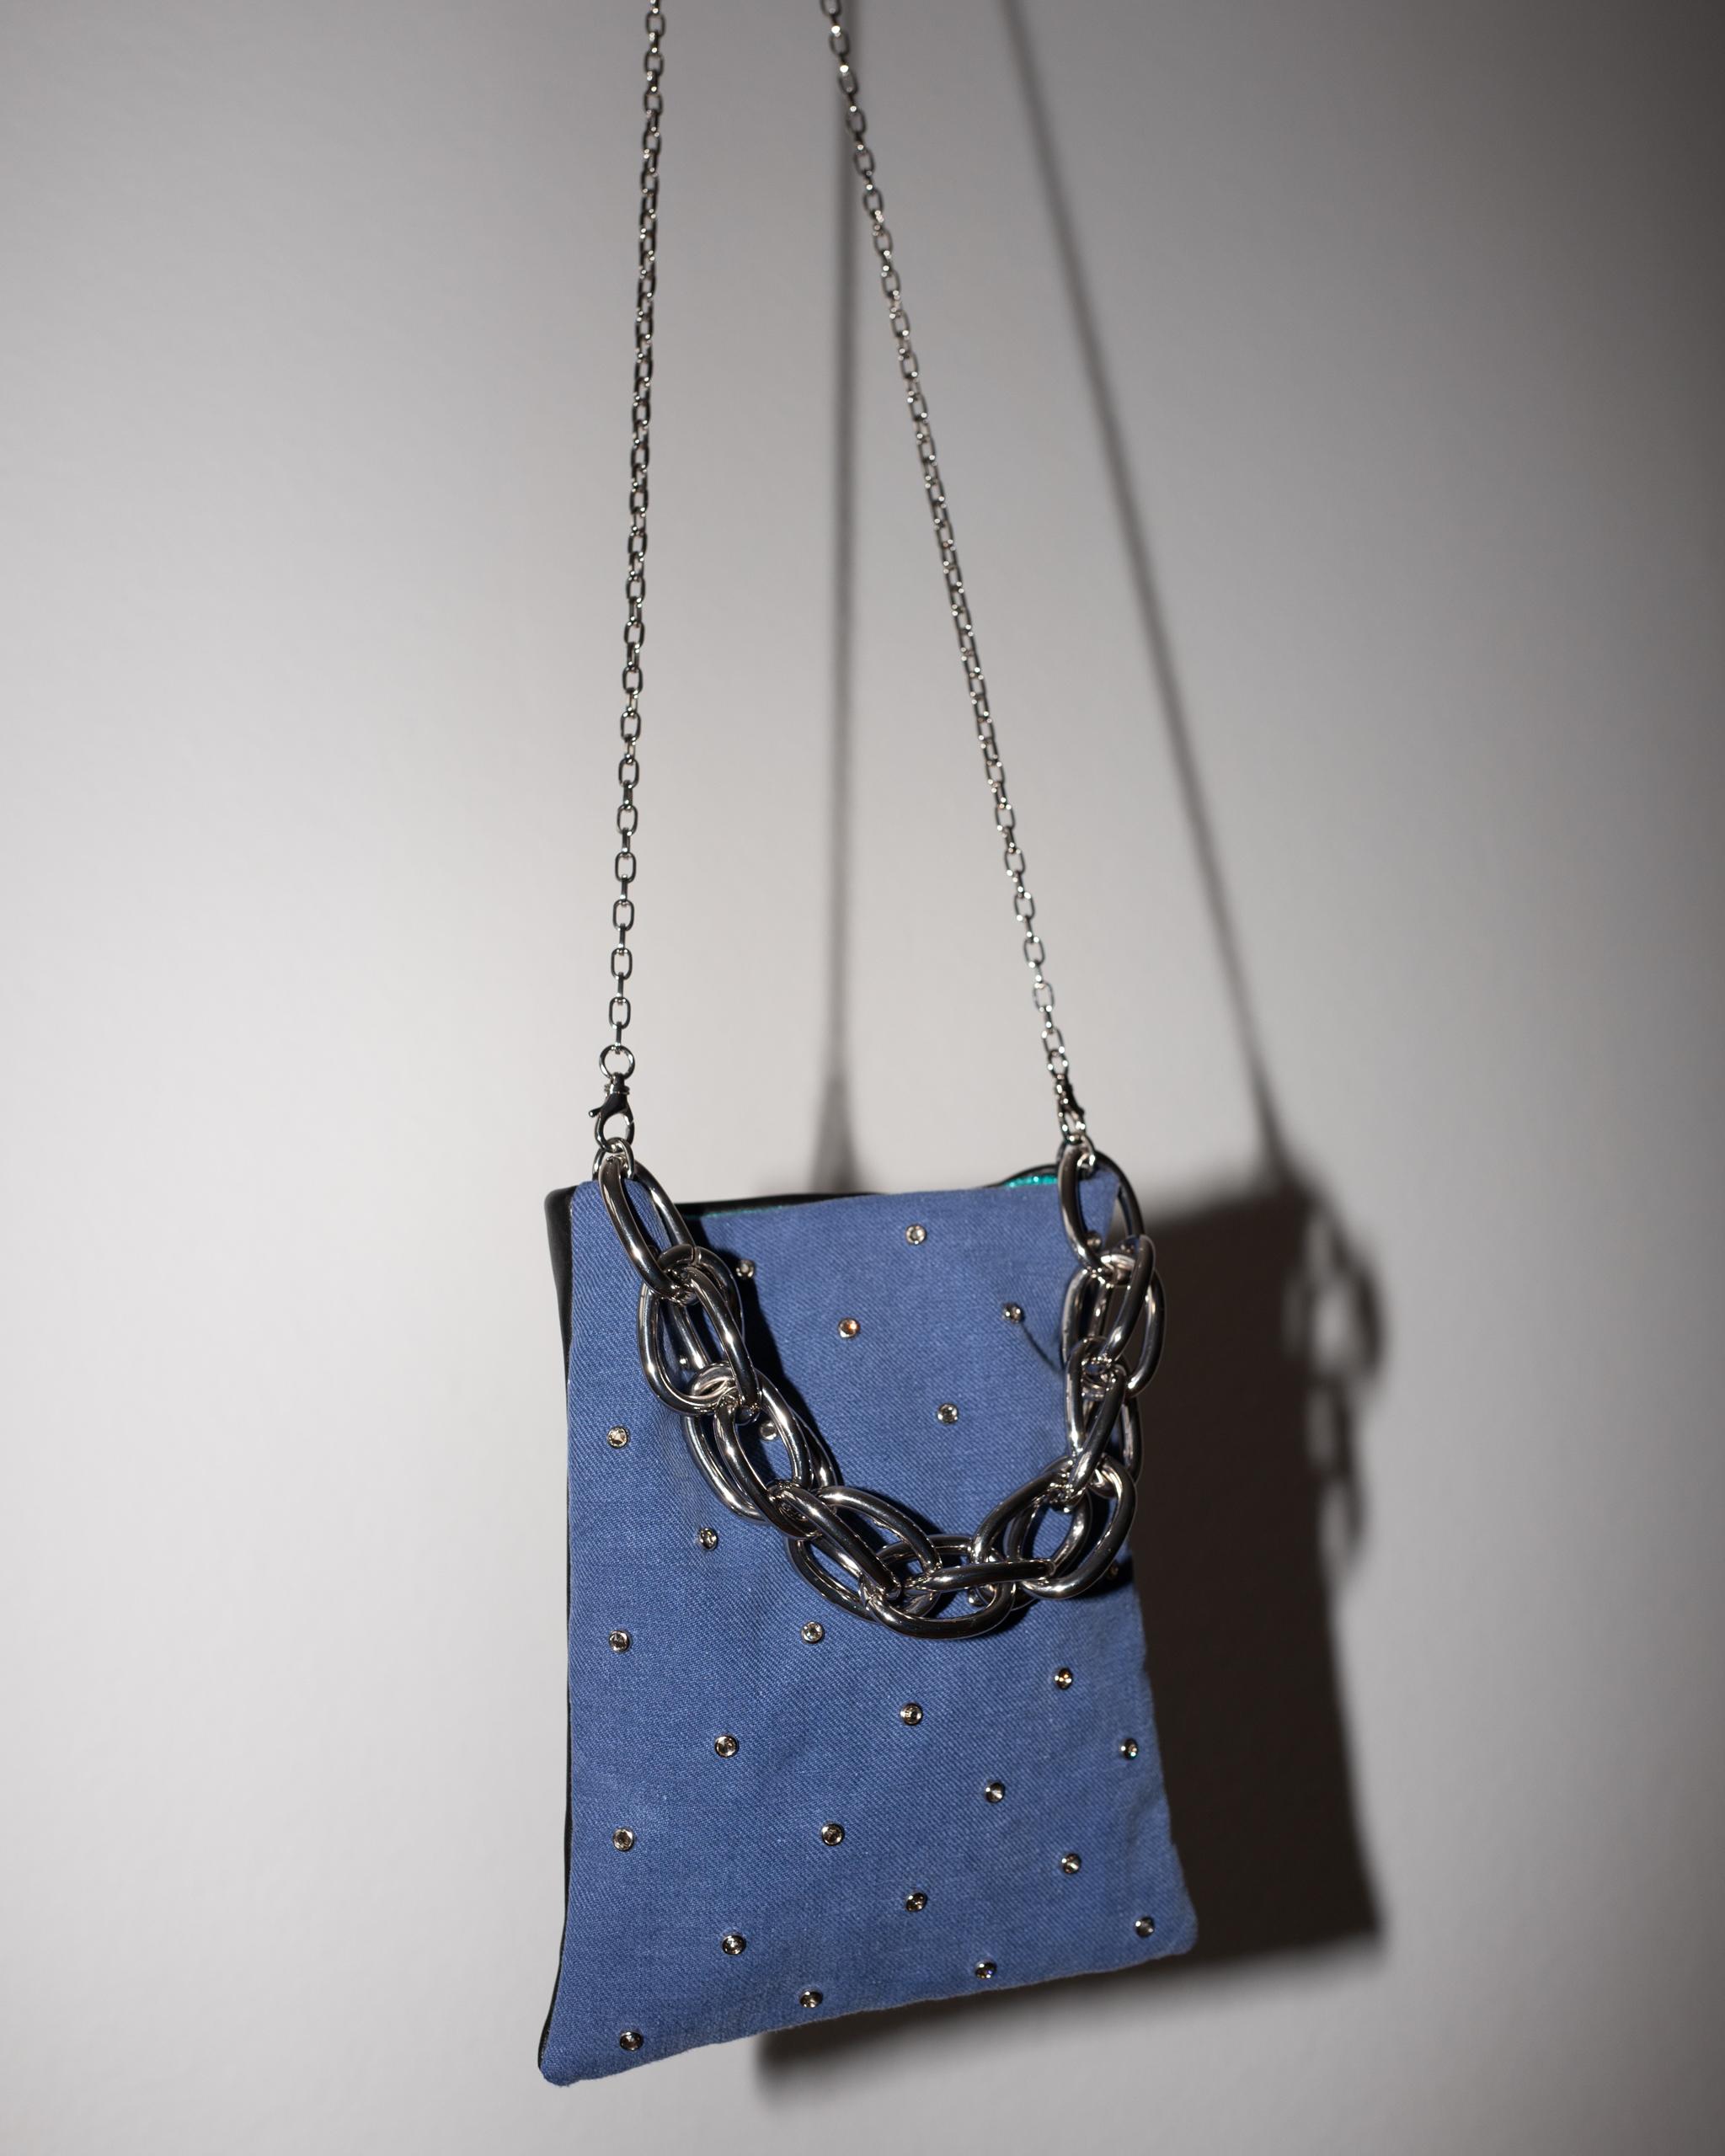 Crystal Embellished Blue Evening Shoulder Bag Black Leather Chunky Chain 3